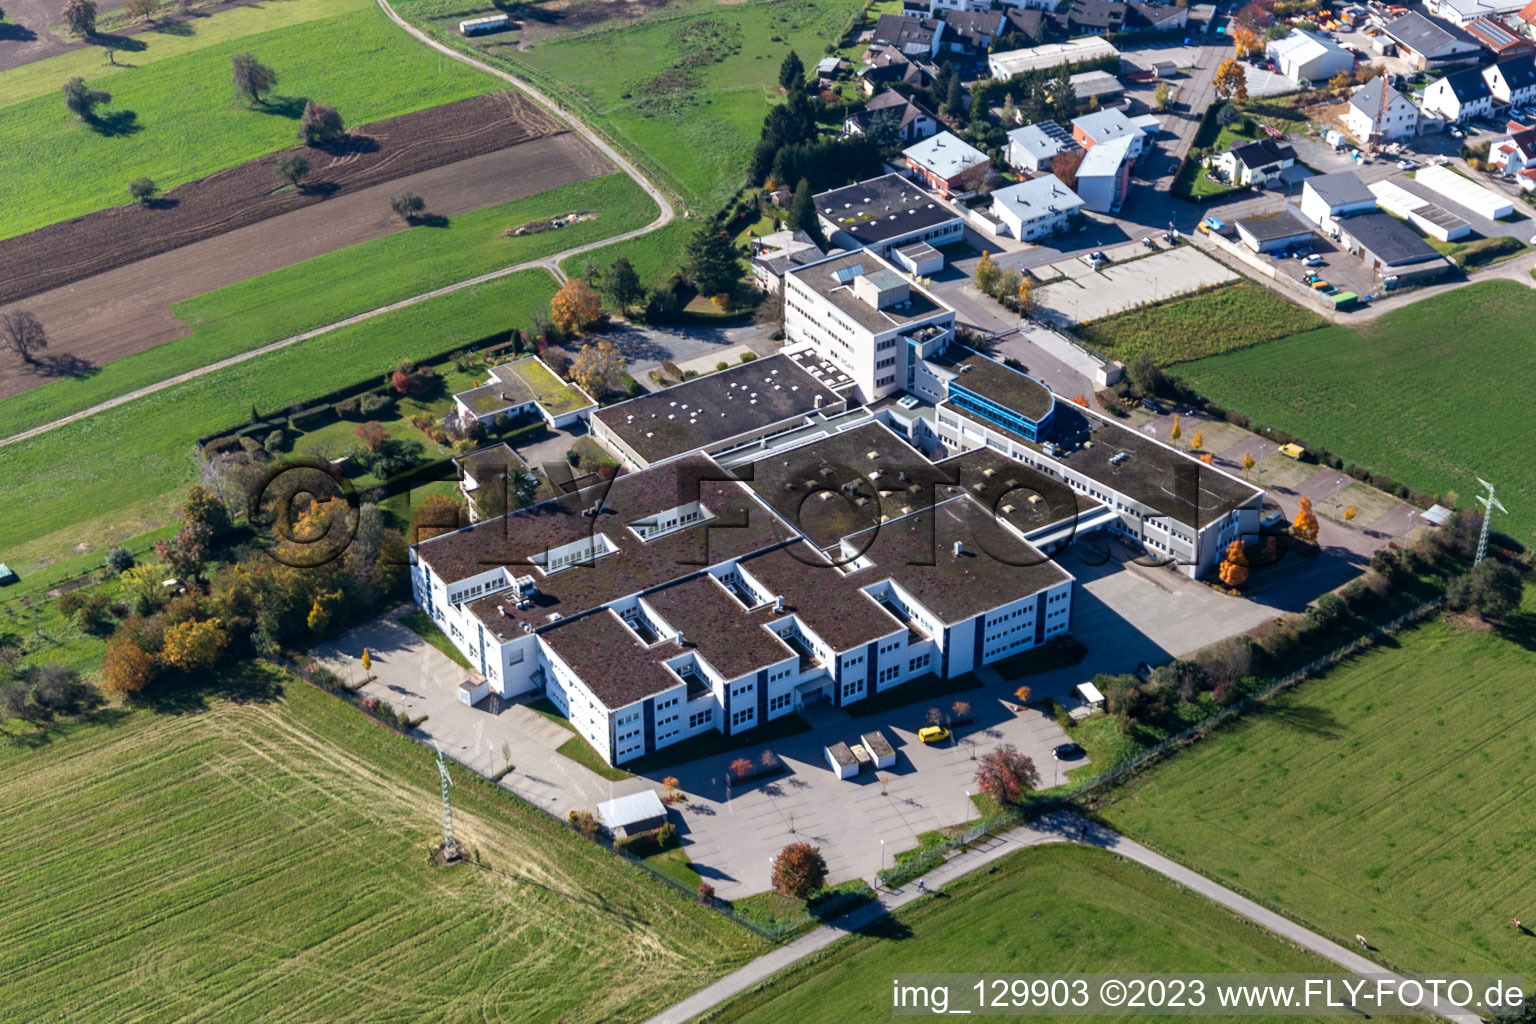 Vue aérienne de Locaux de l'entreprise Polytec GmbH avec halls, bâtiments d'entreprise et installations de production à le quartier Reichenbach in Waldbronn dans le département Bade-Wurtemberg, Allemagne